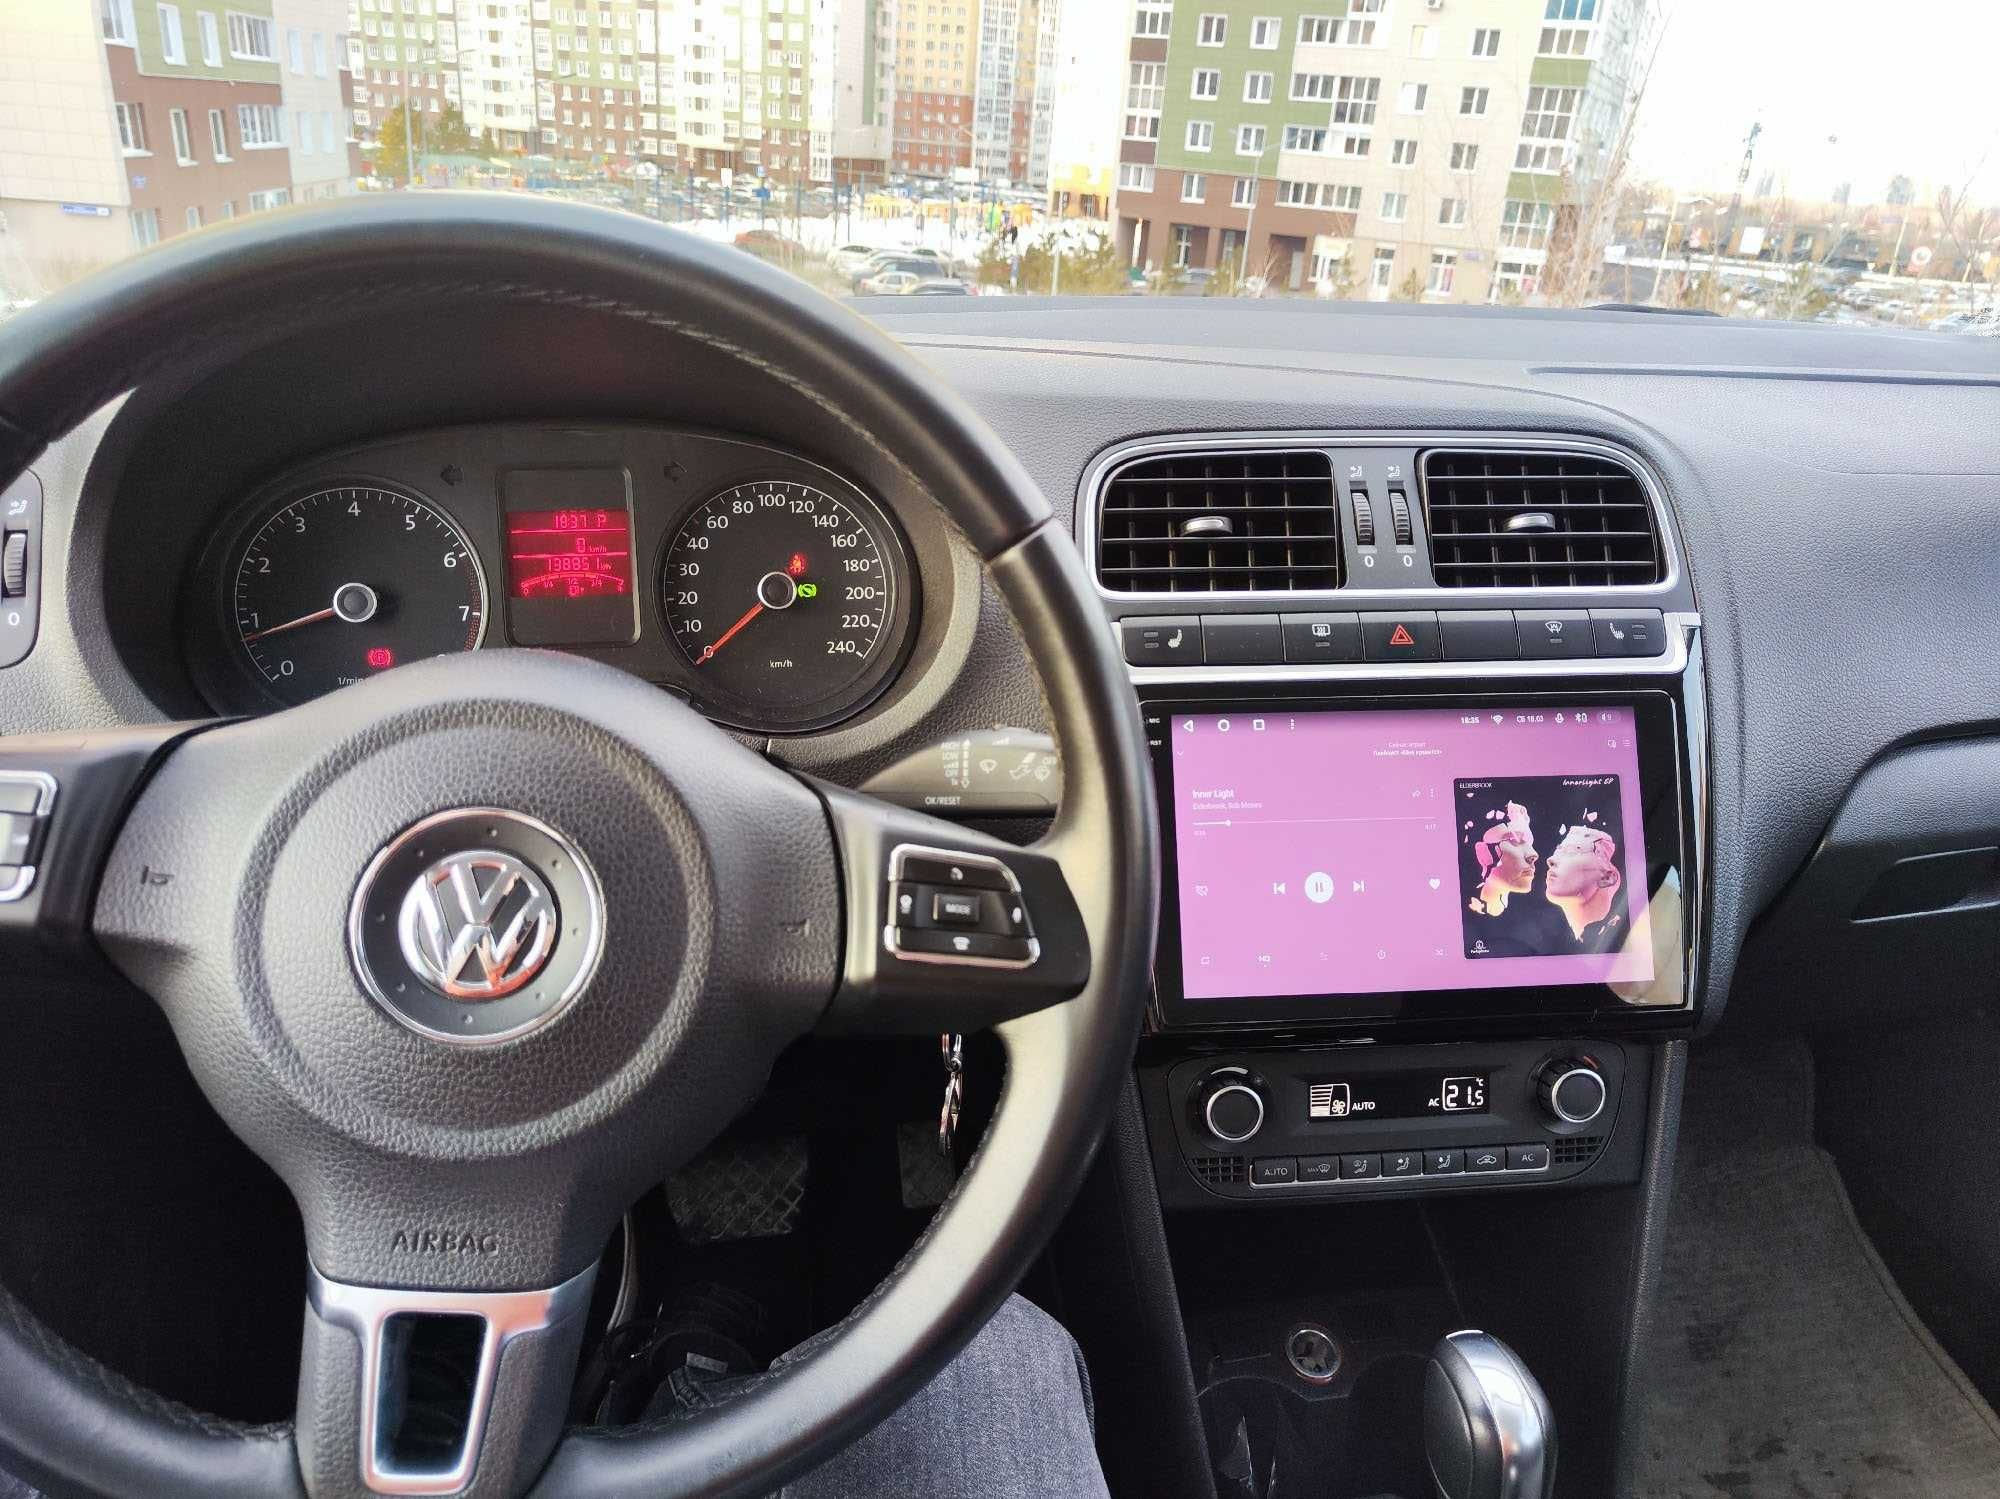 PROMOTIE-Navigatie GPS Android Dedicata Volkswagen Polo - USB WIFI USB